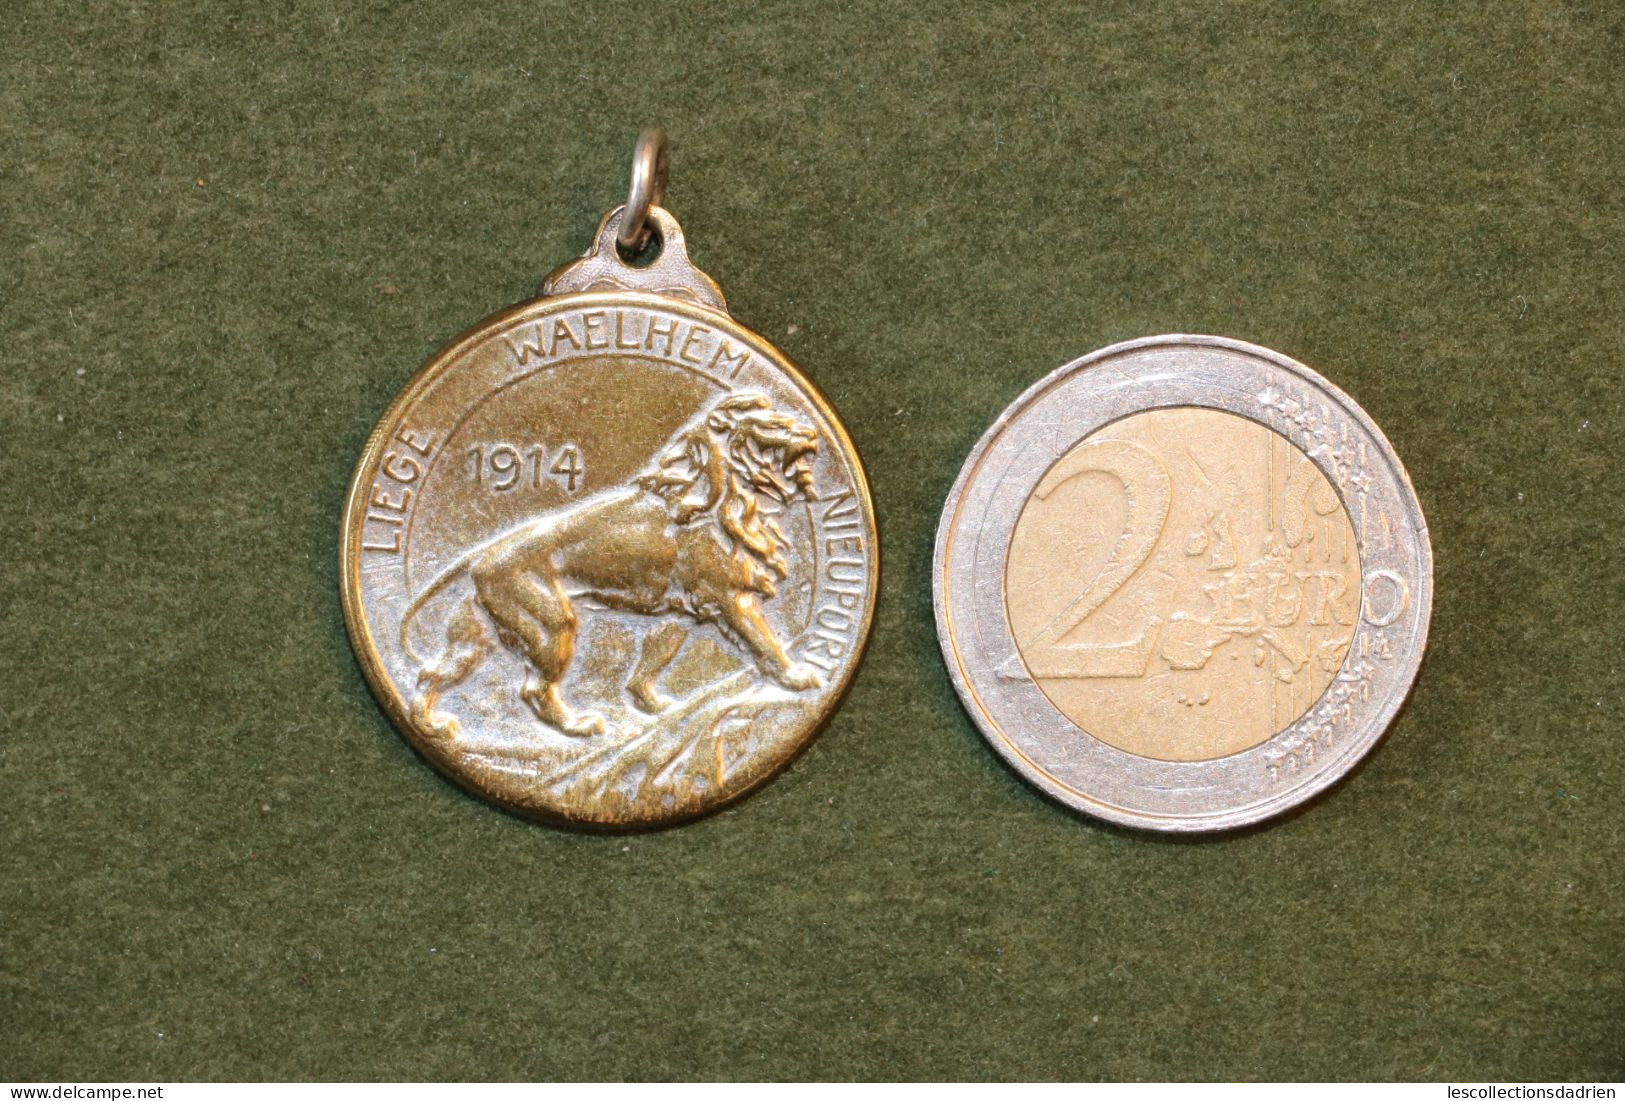 Médaille Belge Liège Waelhem Nieuport Guerre 14-18 - Belgian Medal WWI Médaillette Journée - Belgien